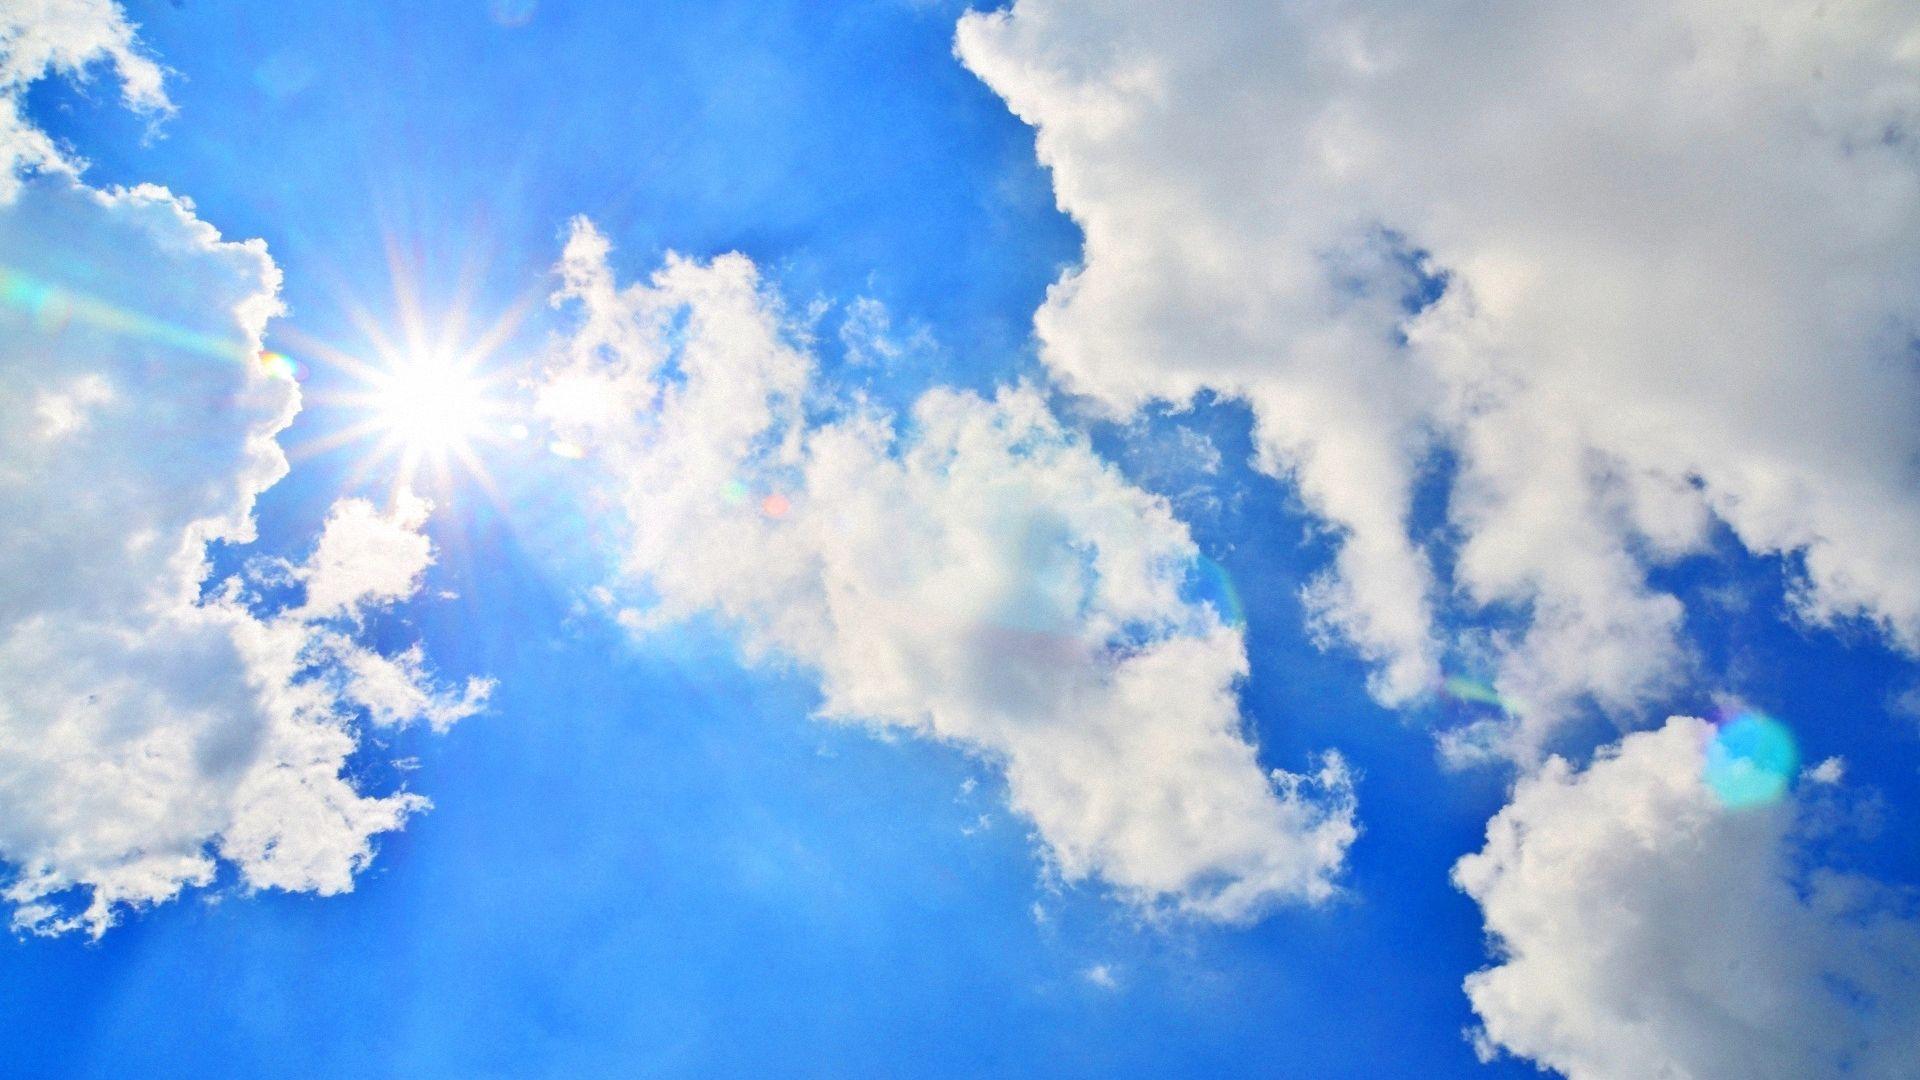 солнечное голубое небо с солнцем сияющим сквозь облака Photo, красивое  солнце с голубым небом и белыми облаками это красивое вертикальное  изображение неба, Hd фотография фото, облако фон картинки и Фото для  бесплатной